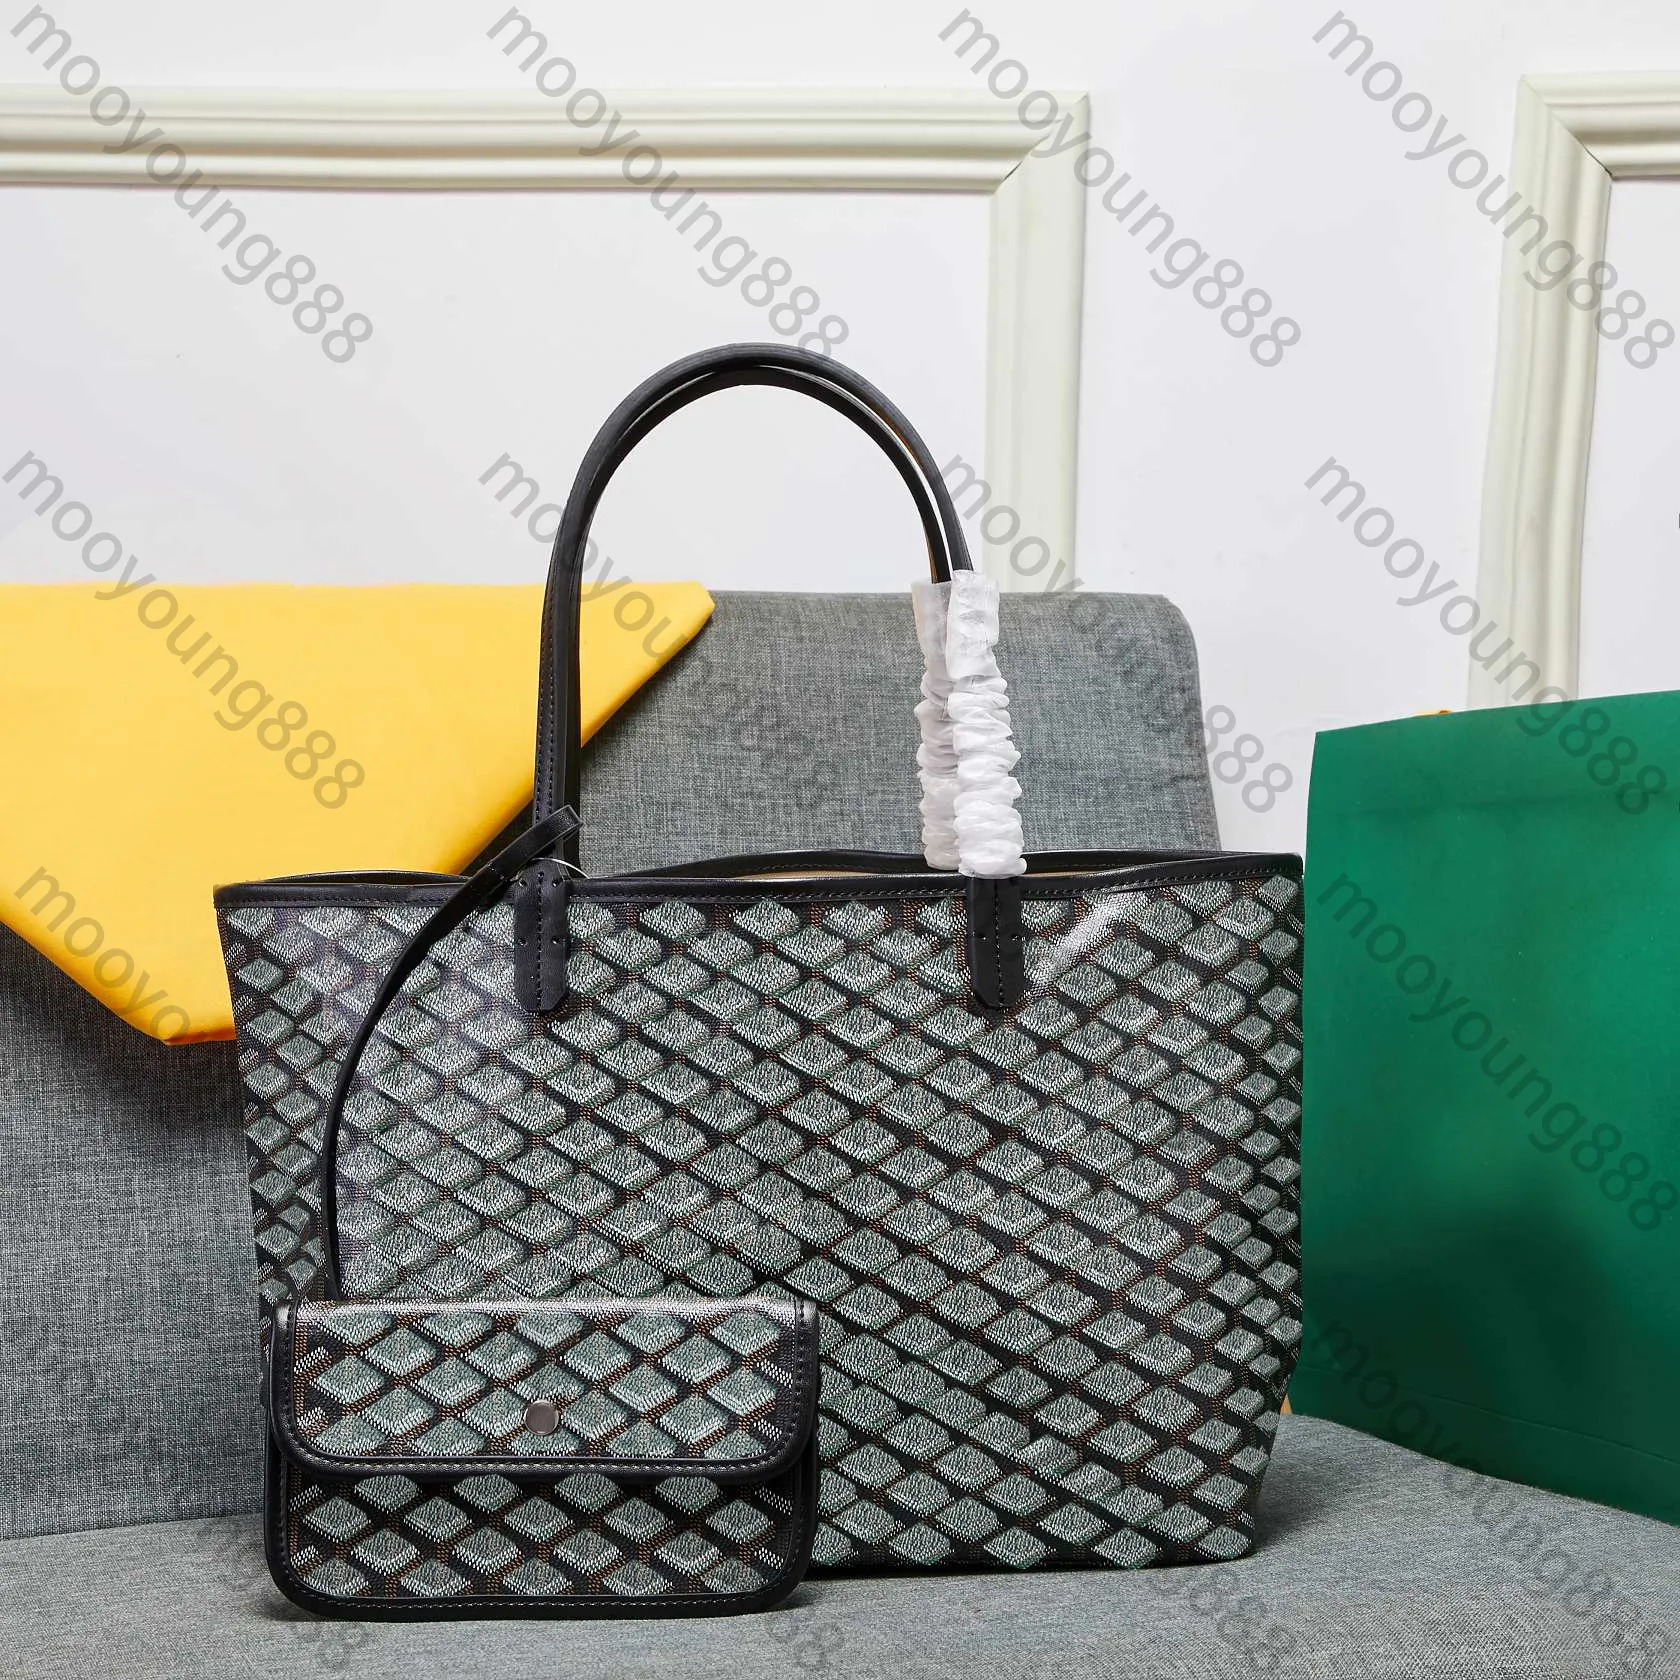 10a Top Tier Quality Luxury Designers väska stor quiltad duk på riktig läder shoppingväska svart handtag handväska liten mynt handväska vintage axelväska med dammpåse